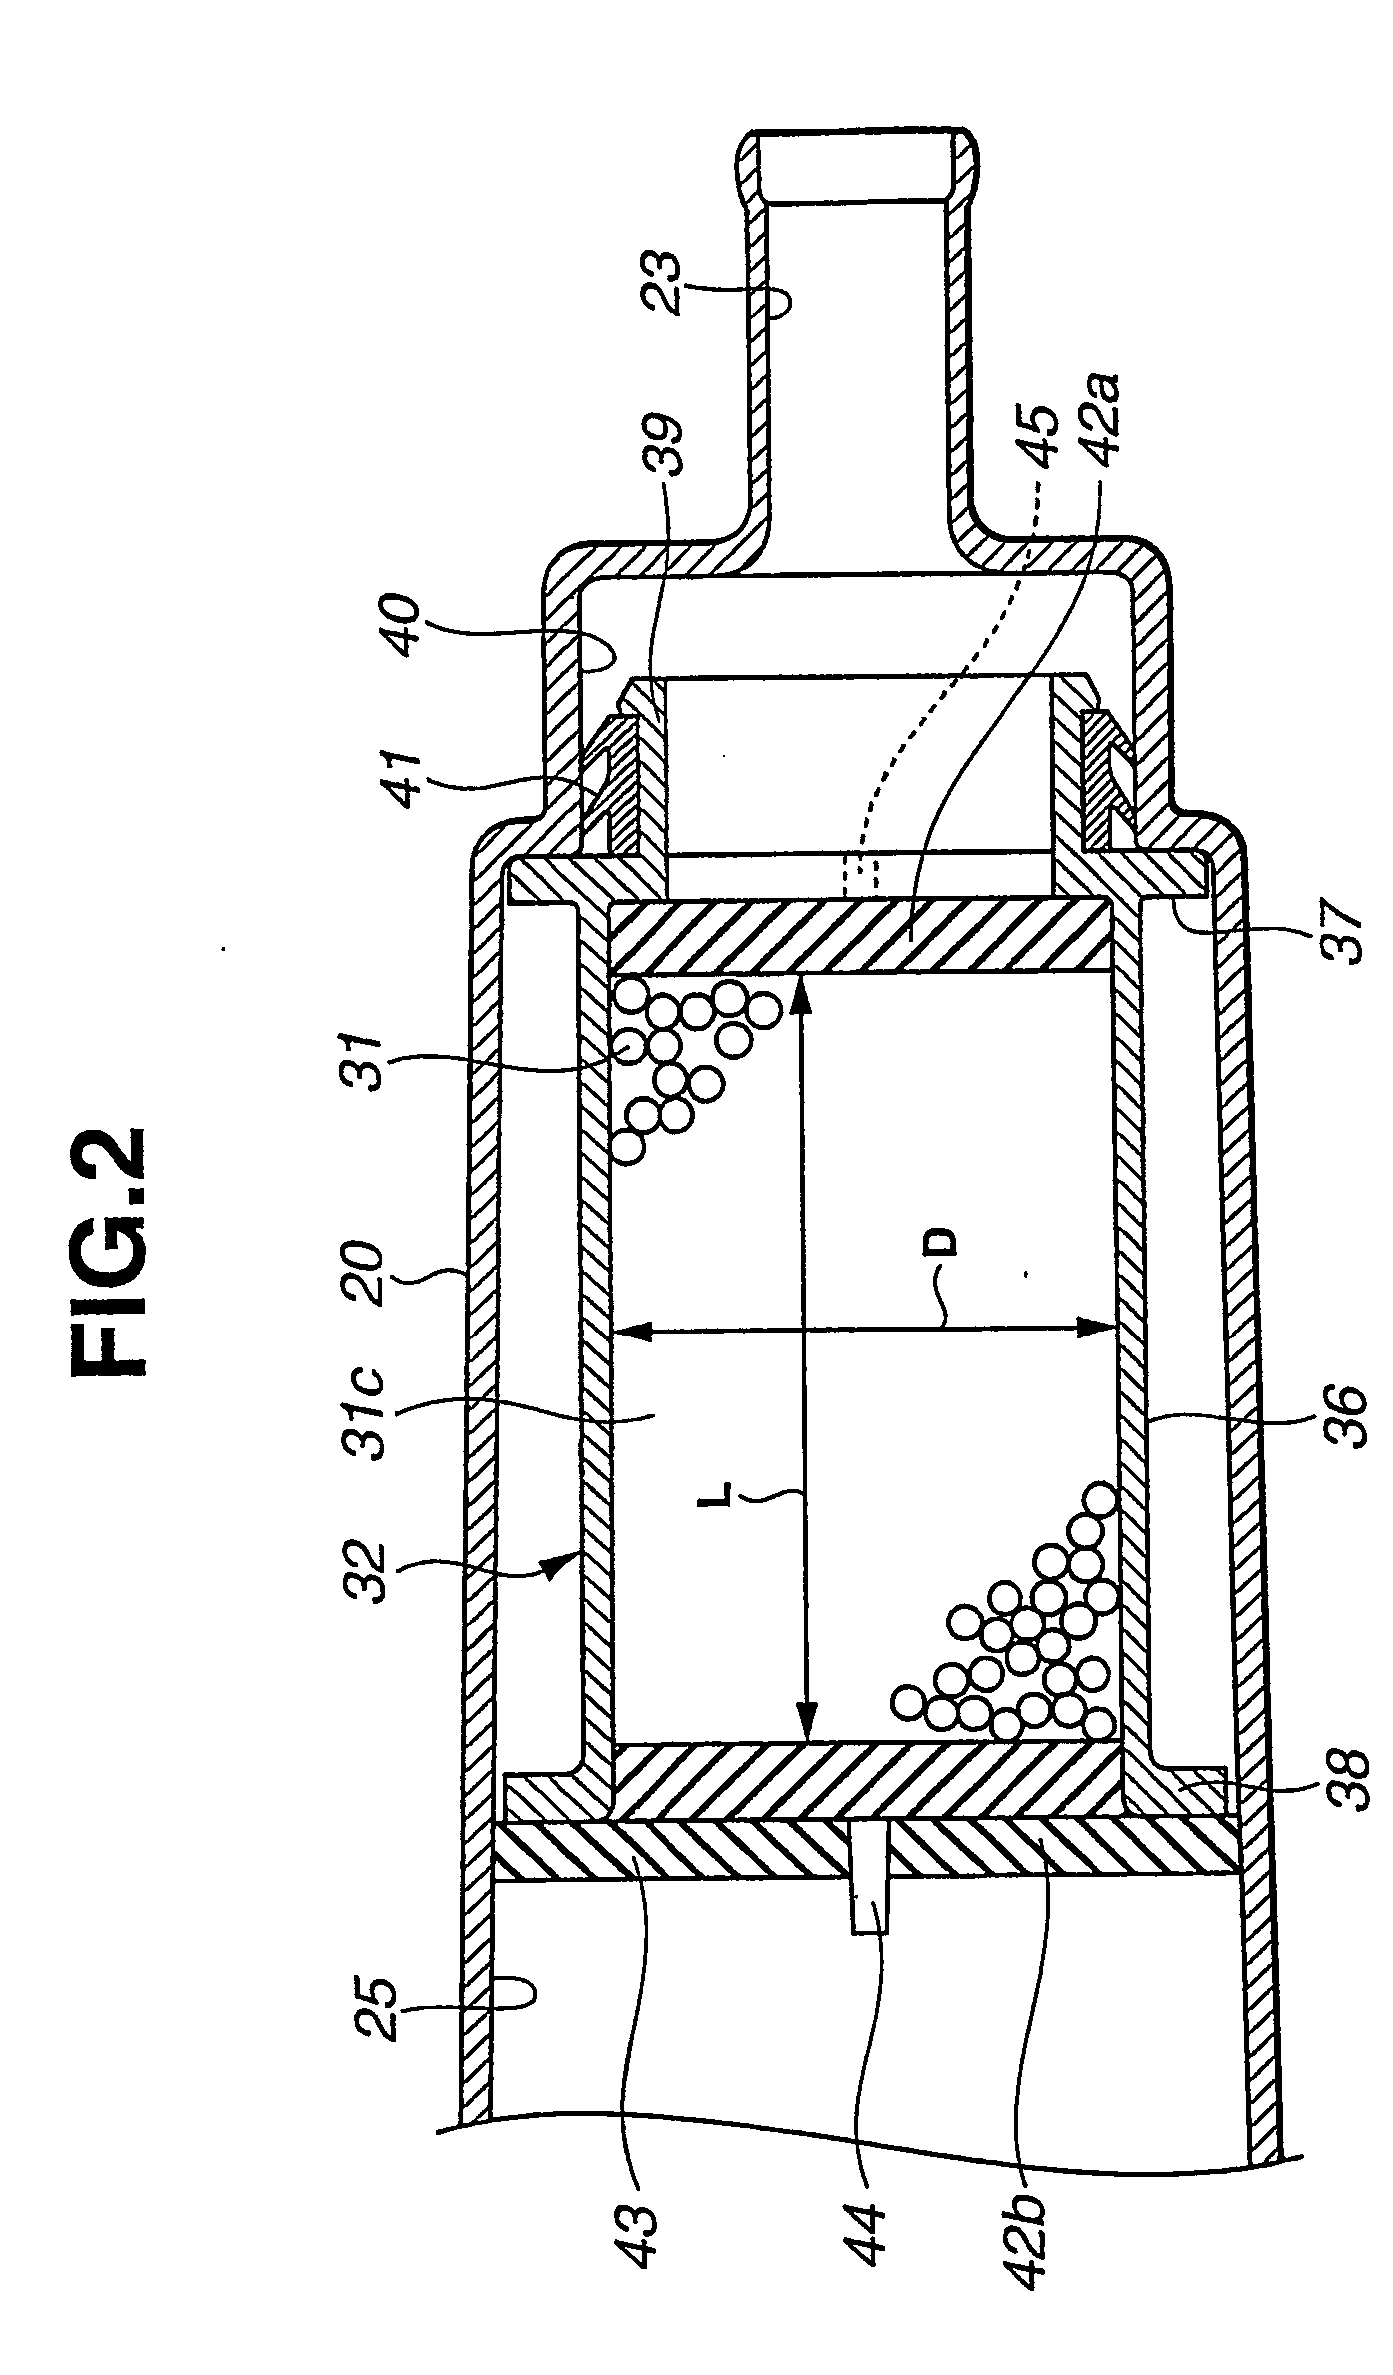 Fuel vapor treatment device